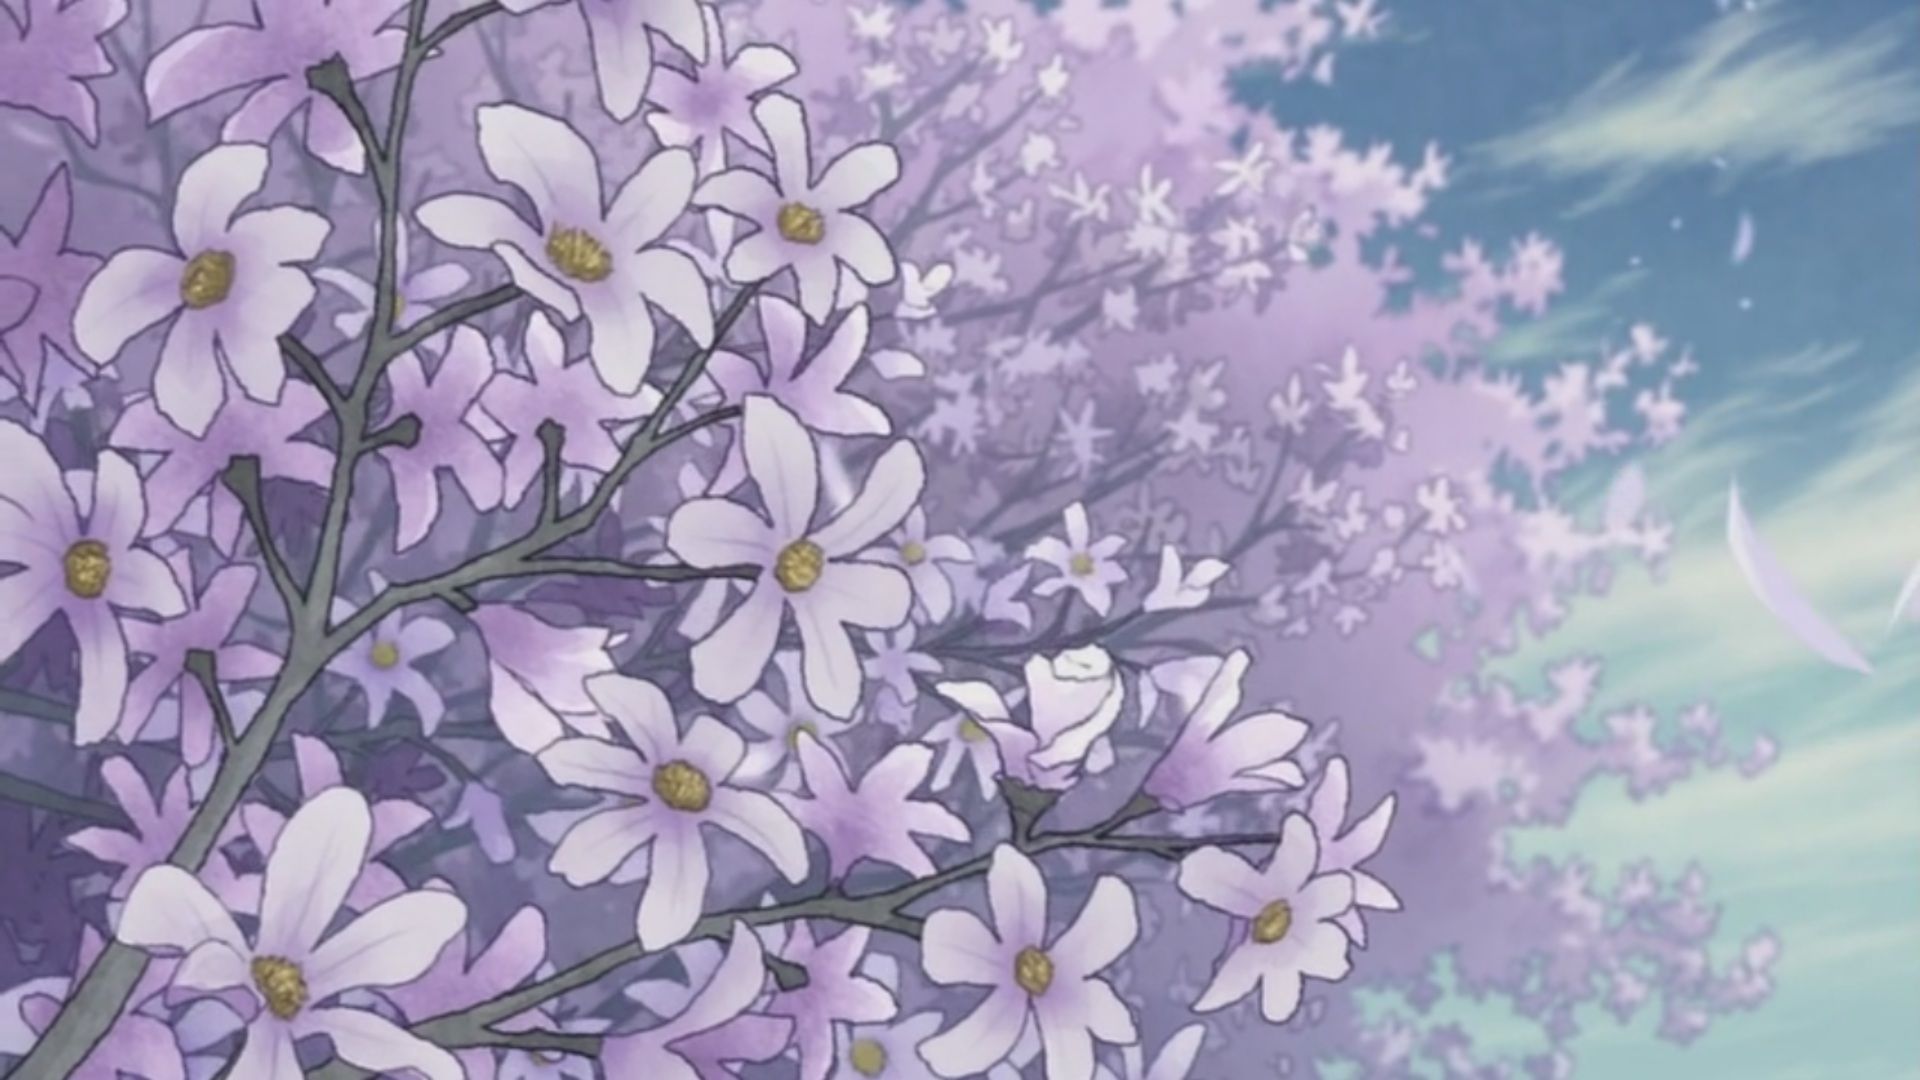 Anime Scenery. Anime scenery wallpaper, Scenery wallpaper, Anime wallpaper iphone